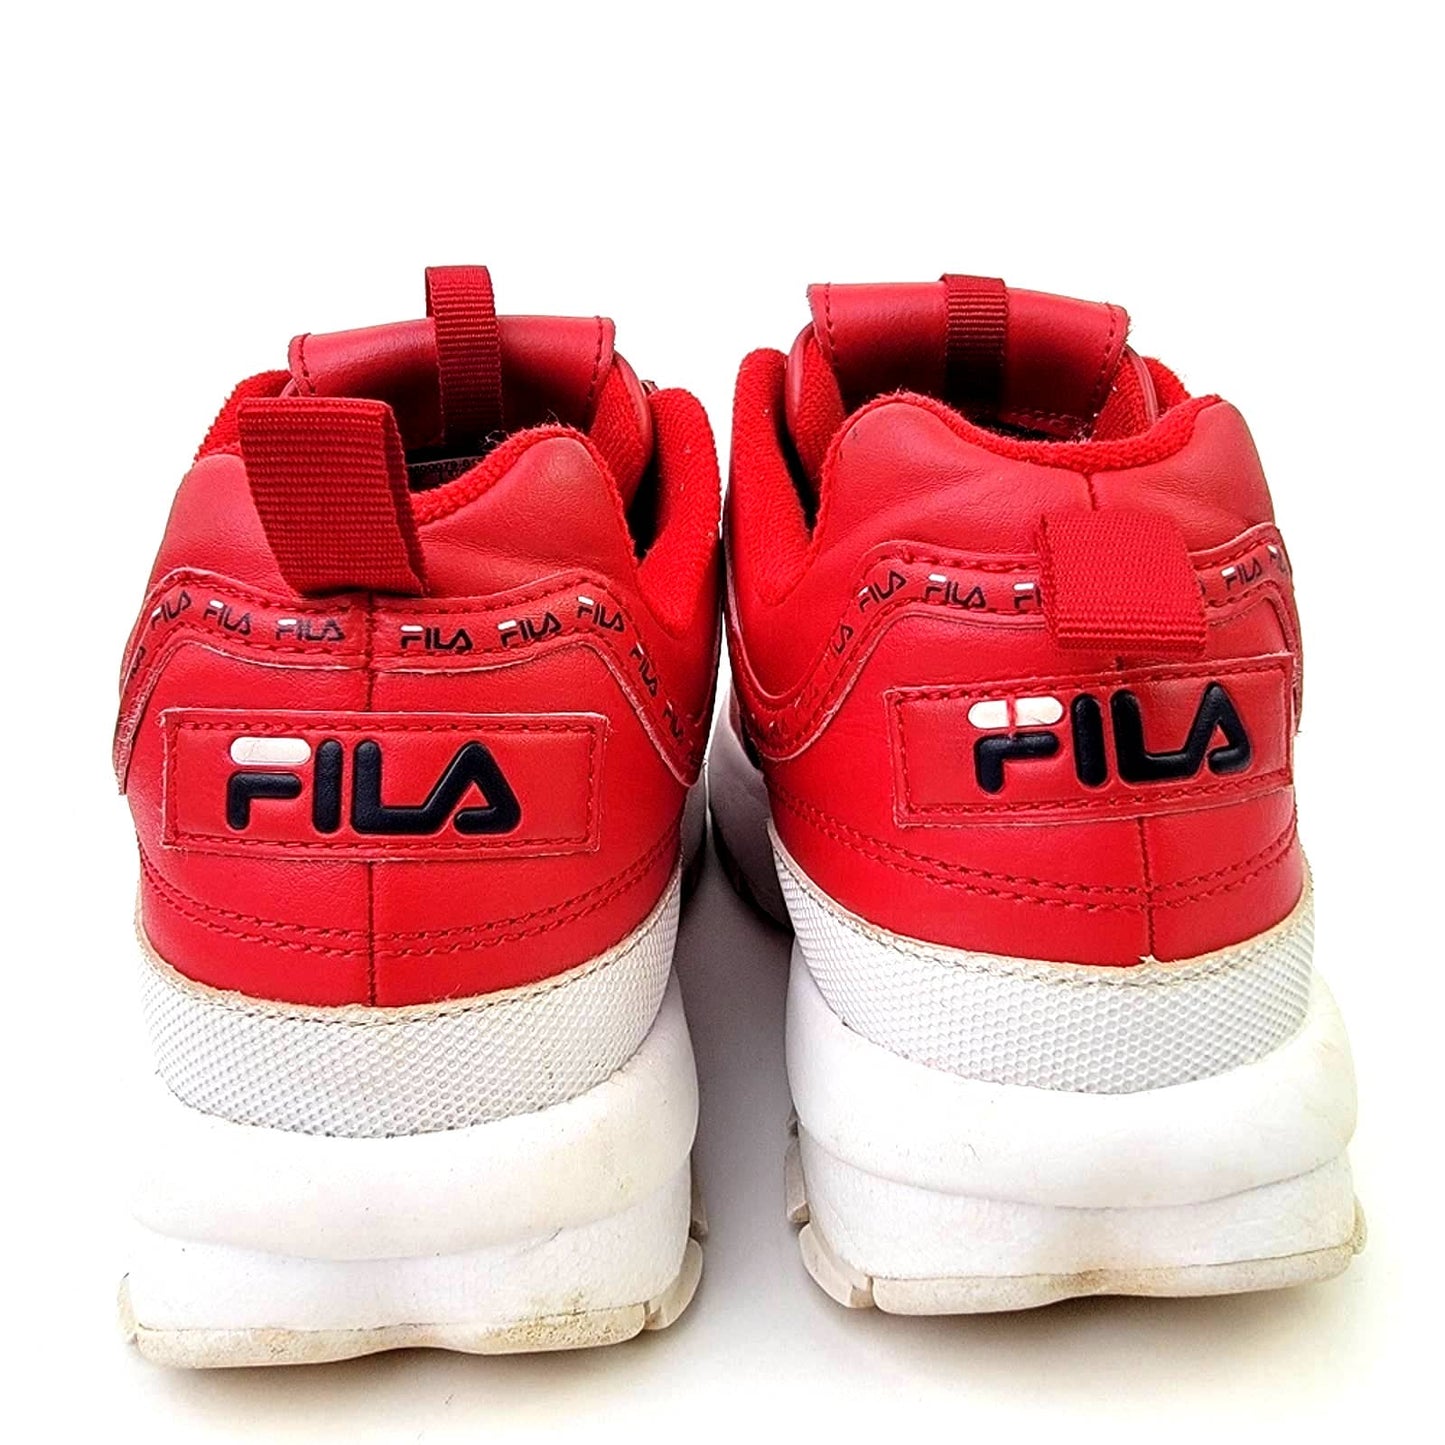 Fila Disruptor II Premium Chunky Lugg Sneakers - 8